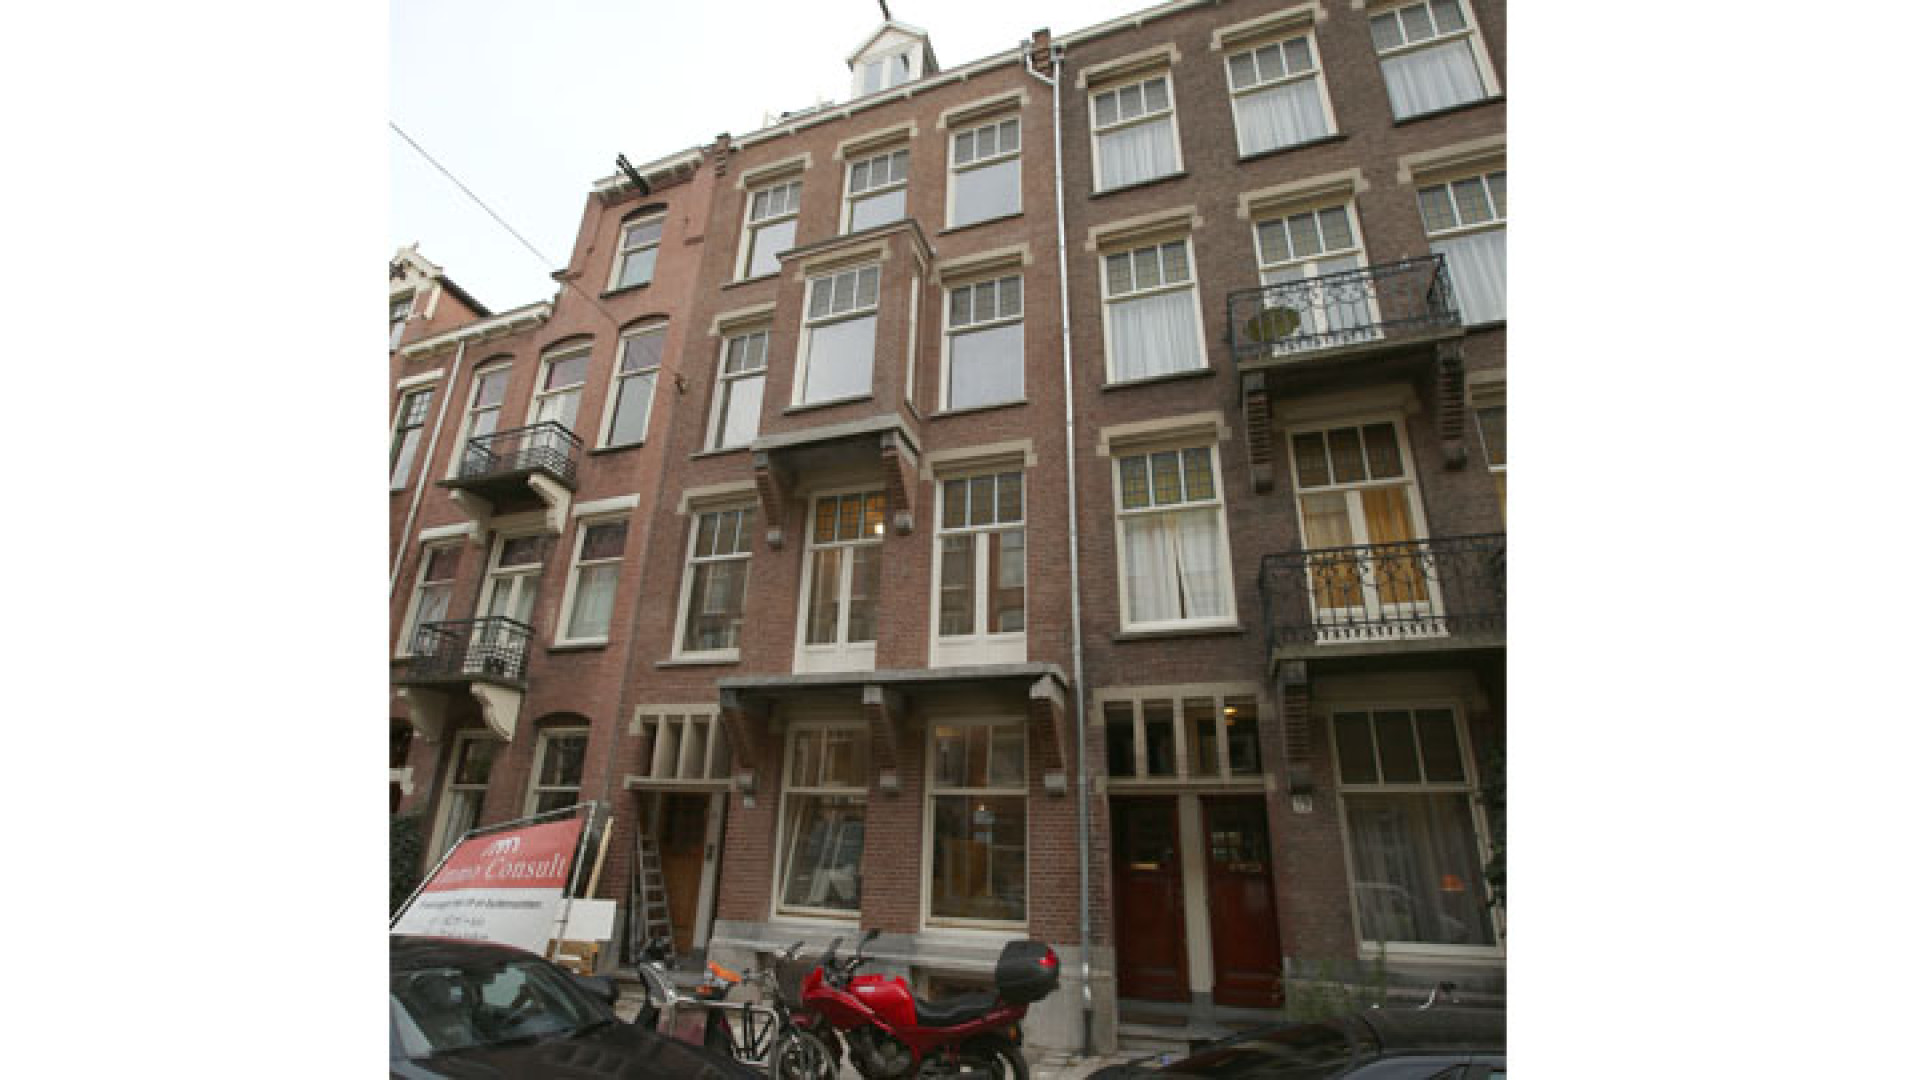 Doutzen Kroes koopt schitterend pand in Amsterdam Oud Zuid. Zie exclusieve foto's 2